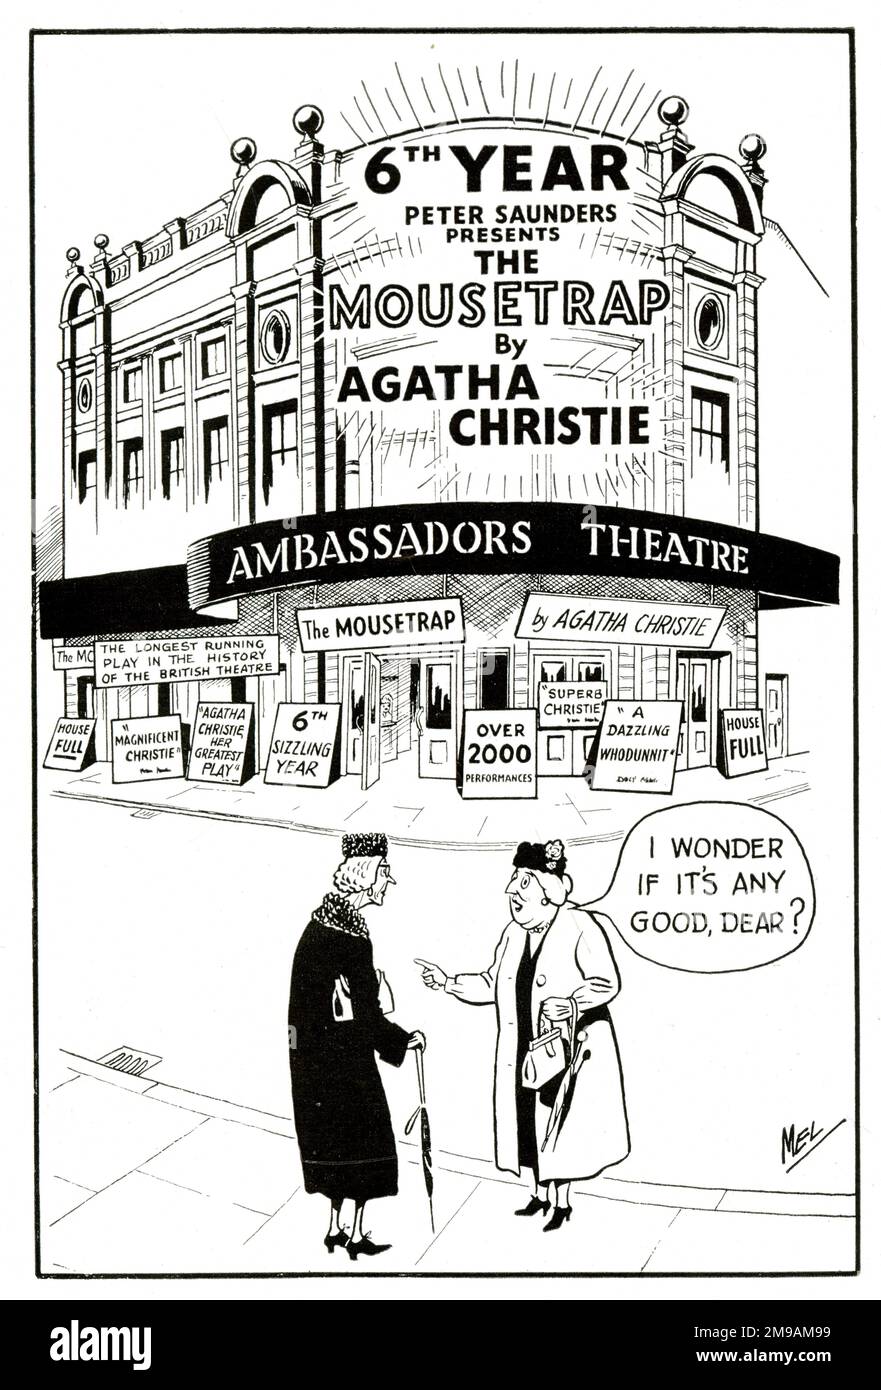 Publicité pour la pièce d'Agatha Christie le Mousetrap, dans sa sixième année au Ambassadeurs Theatre, Londres, décembre 1957 Banque D'Images